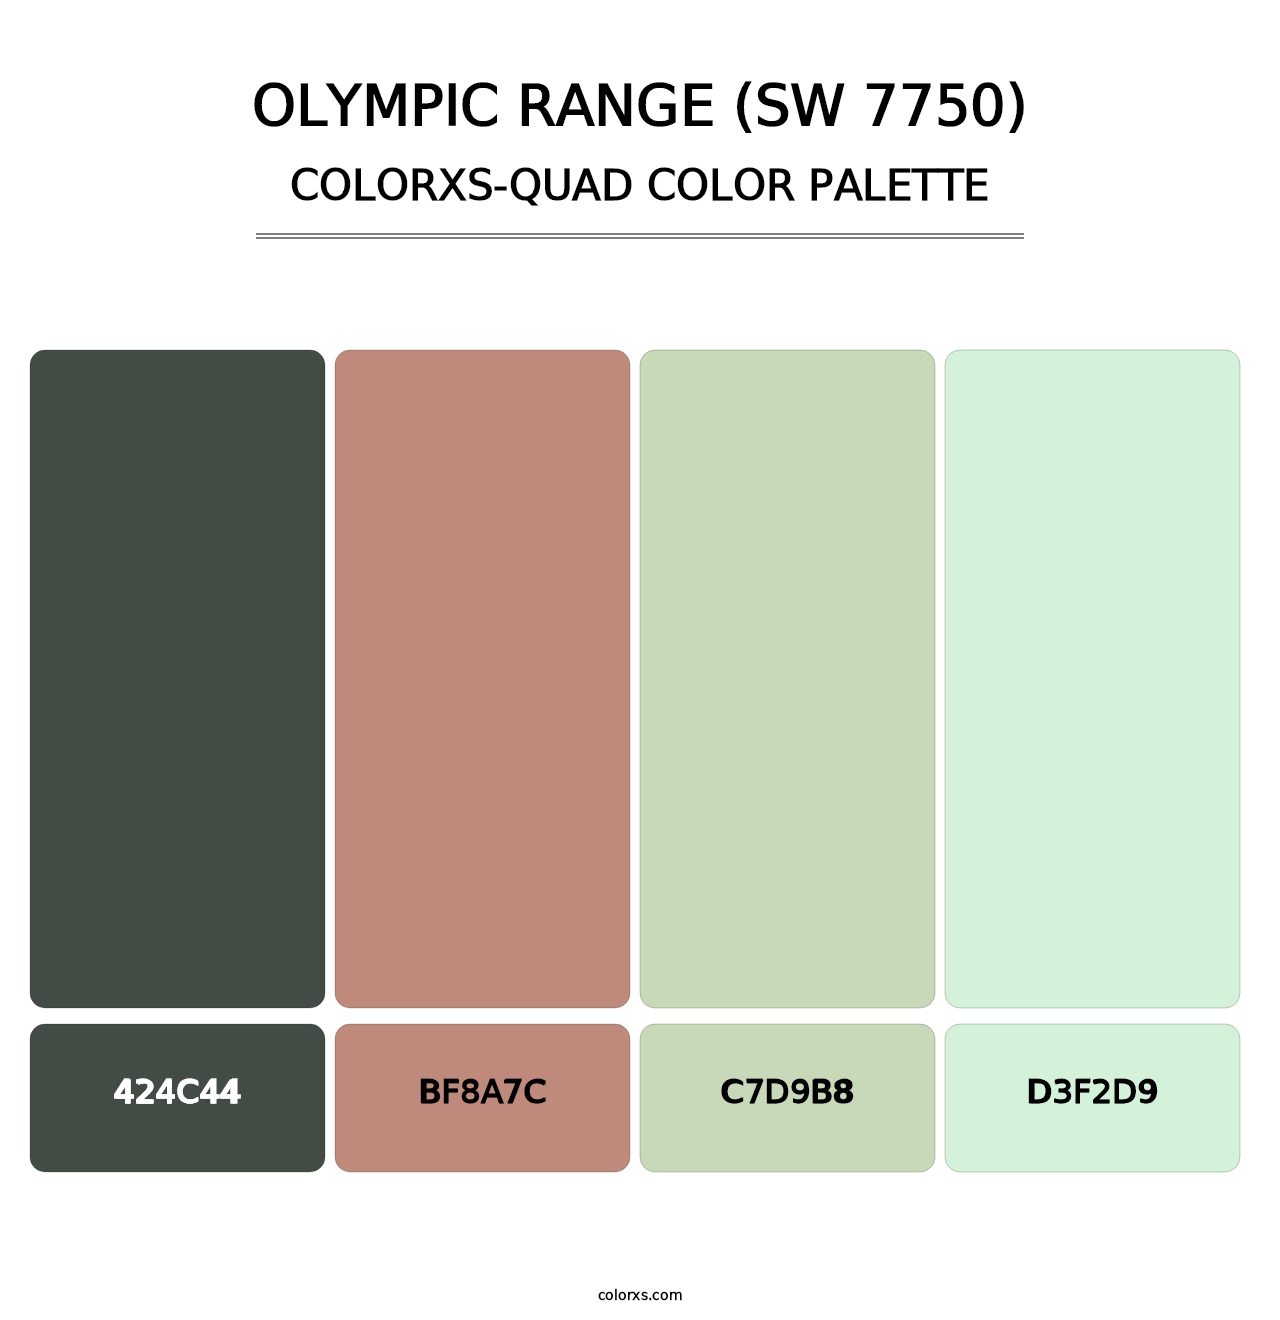 Olympic Range (SW 7750) - Colorxs Quad Palette